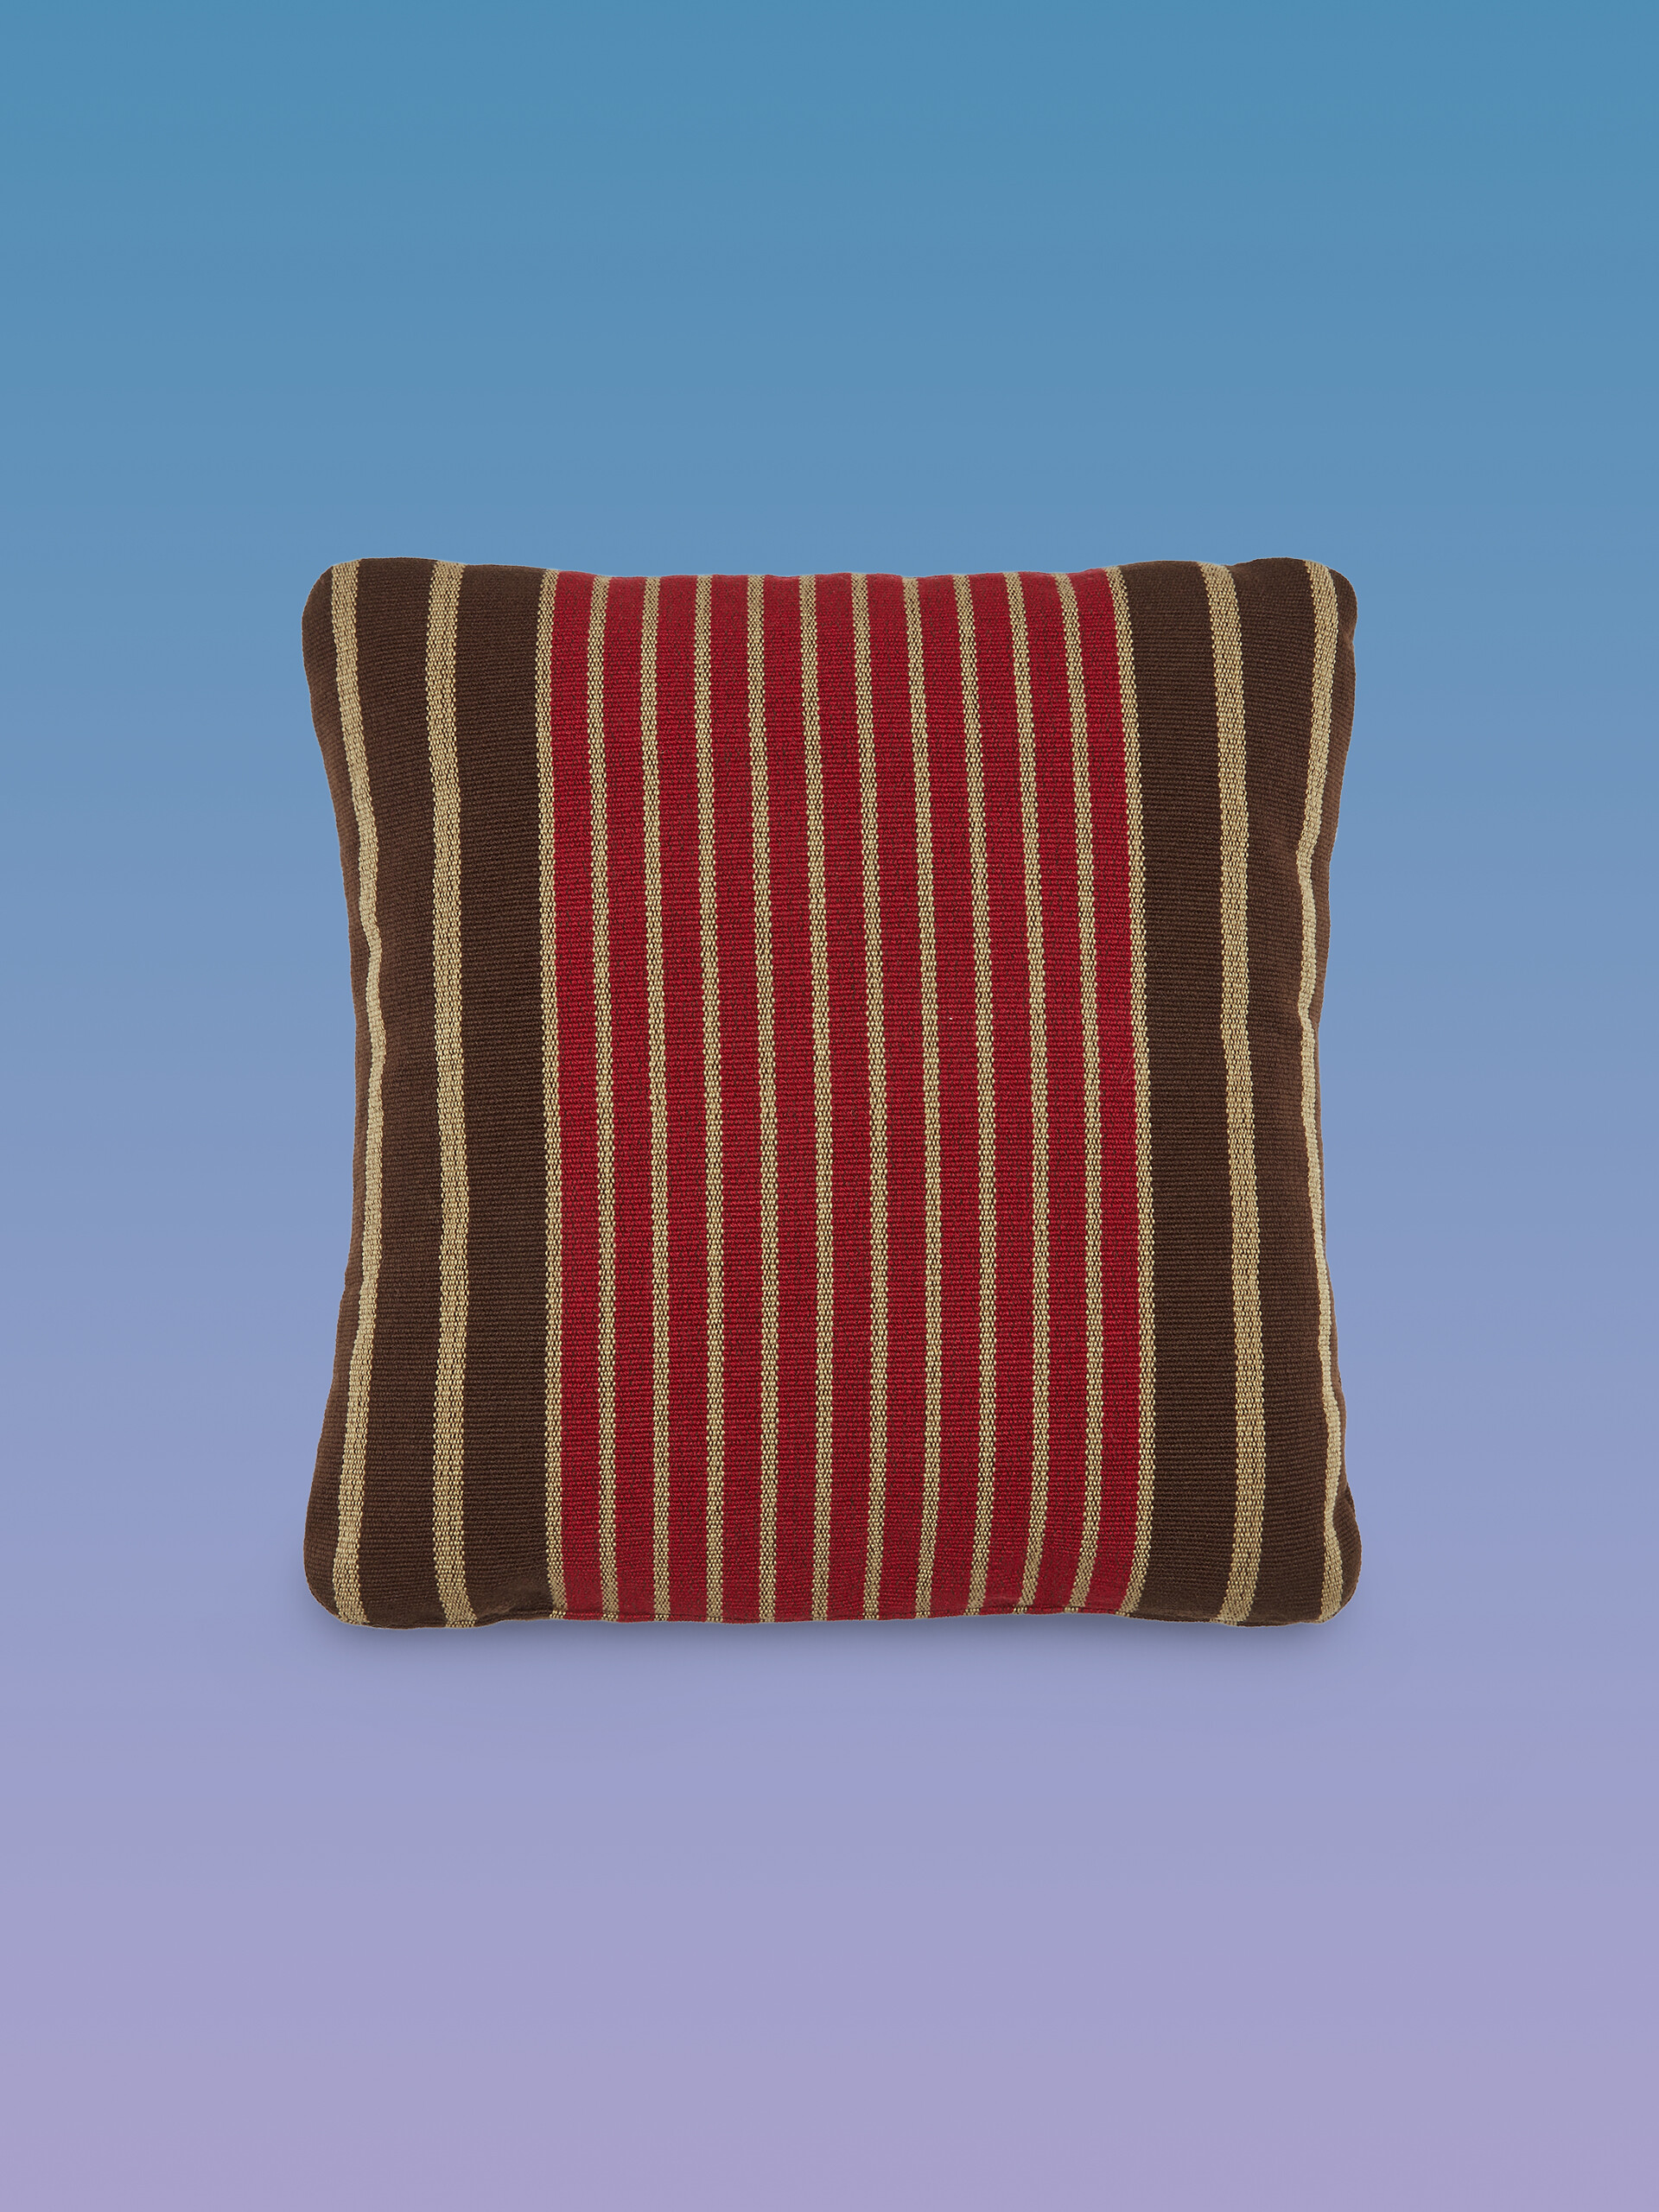 Fodera per cuscino quadrata MARNI MARKET in poliestere rosso marrone e beige - Arredamento - Image 1